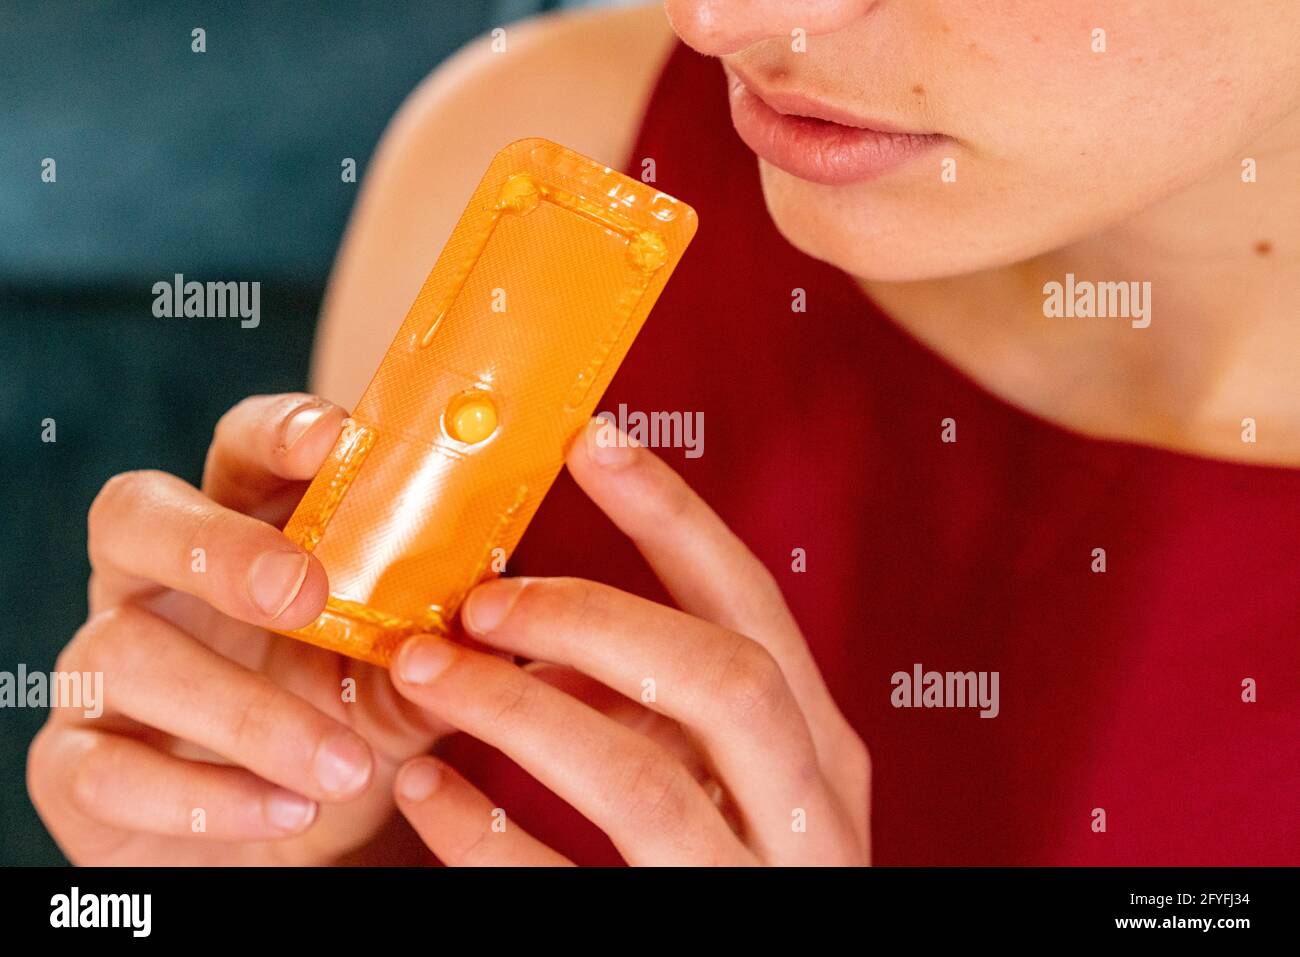 Norlevo ® píldora del día después (píldora anticonceptiva de emergencia) Foto de stock